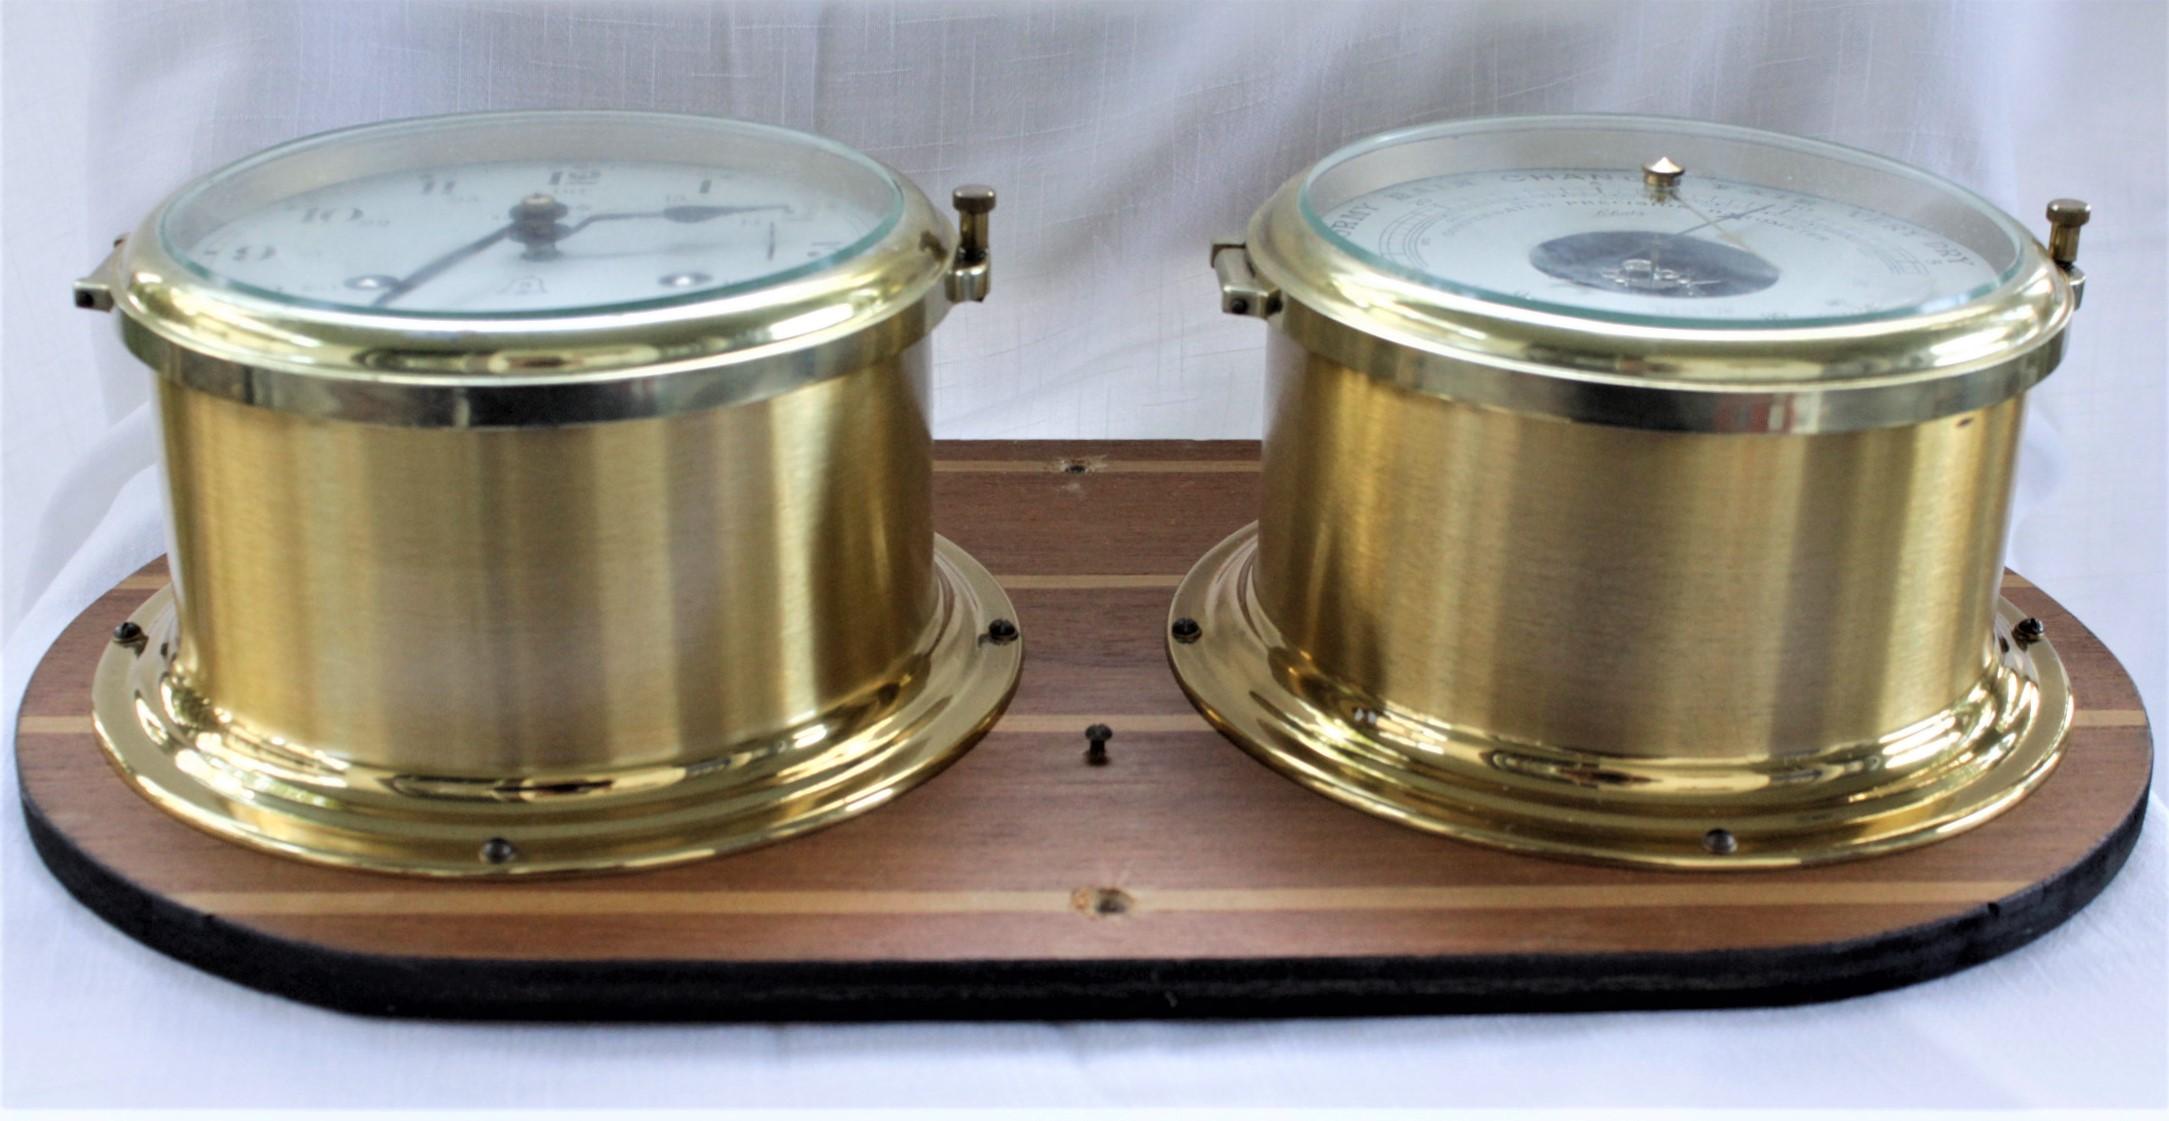 schatz royal mariner clock and barometer